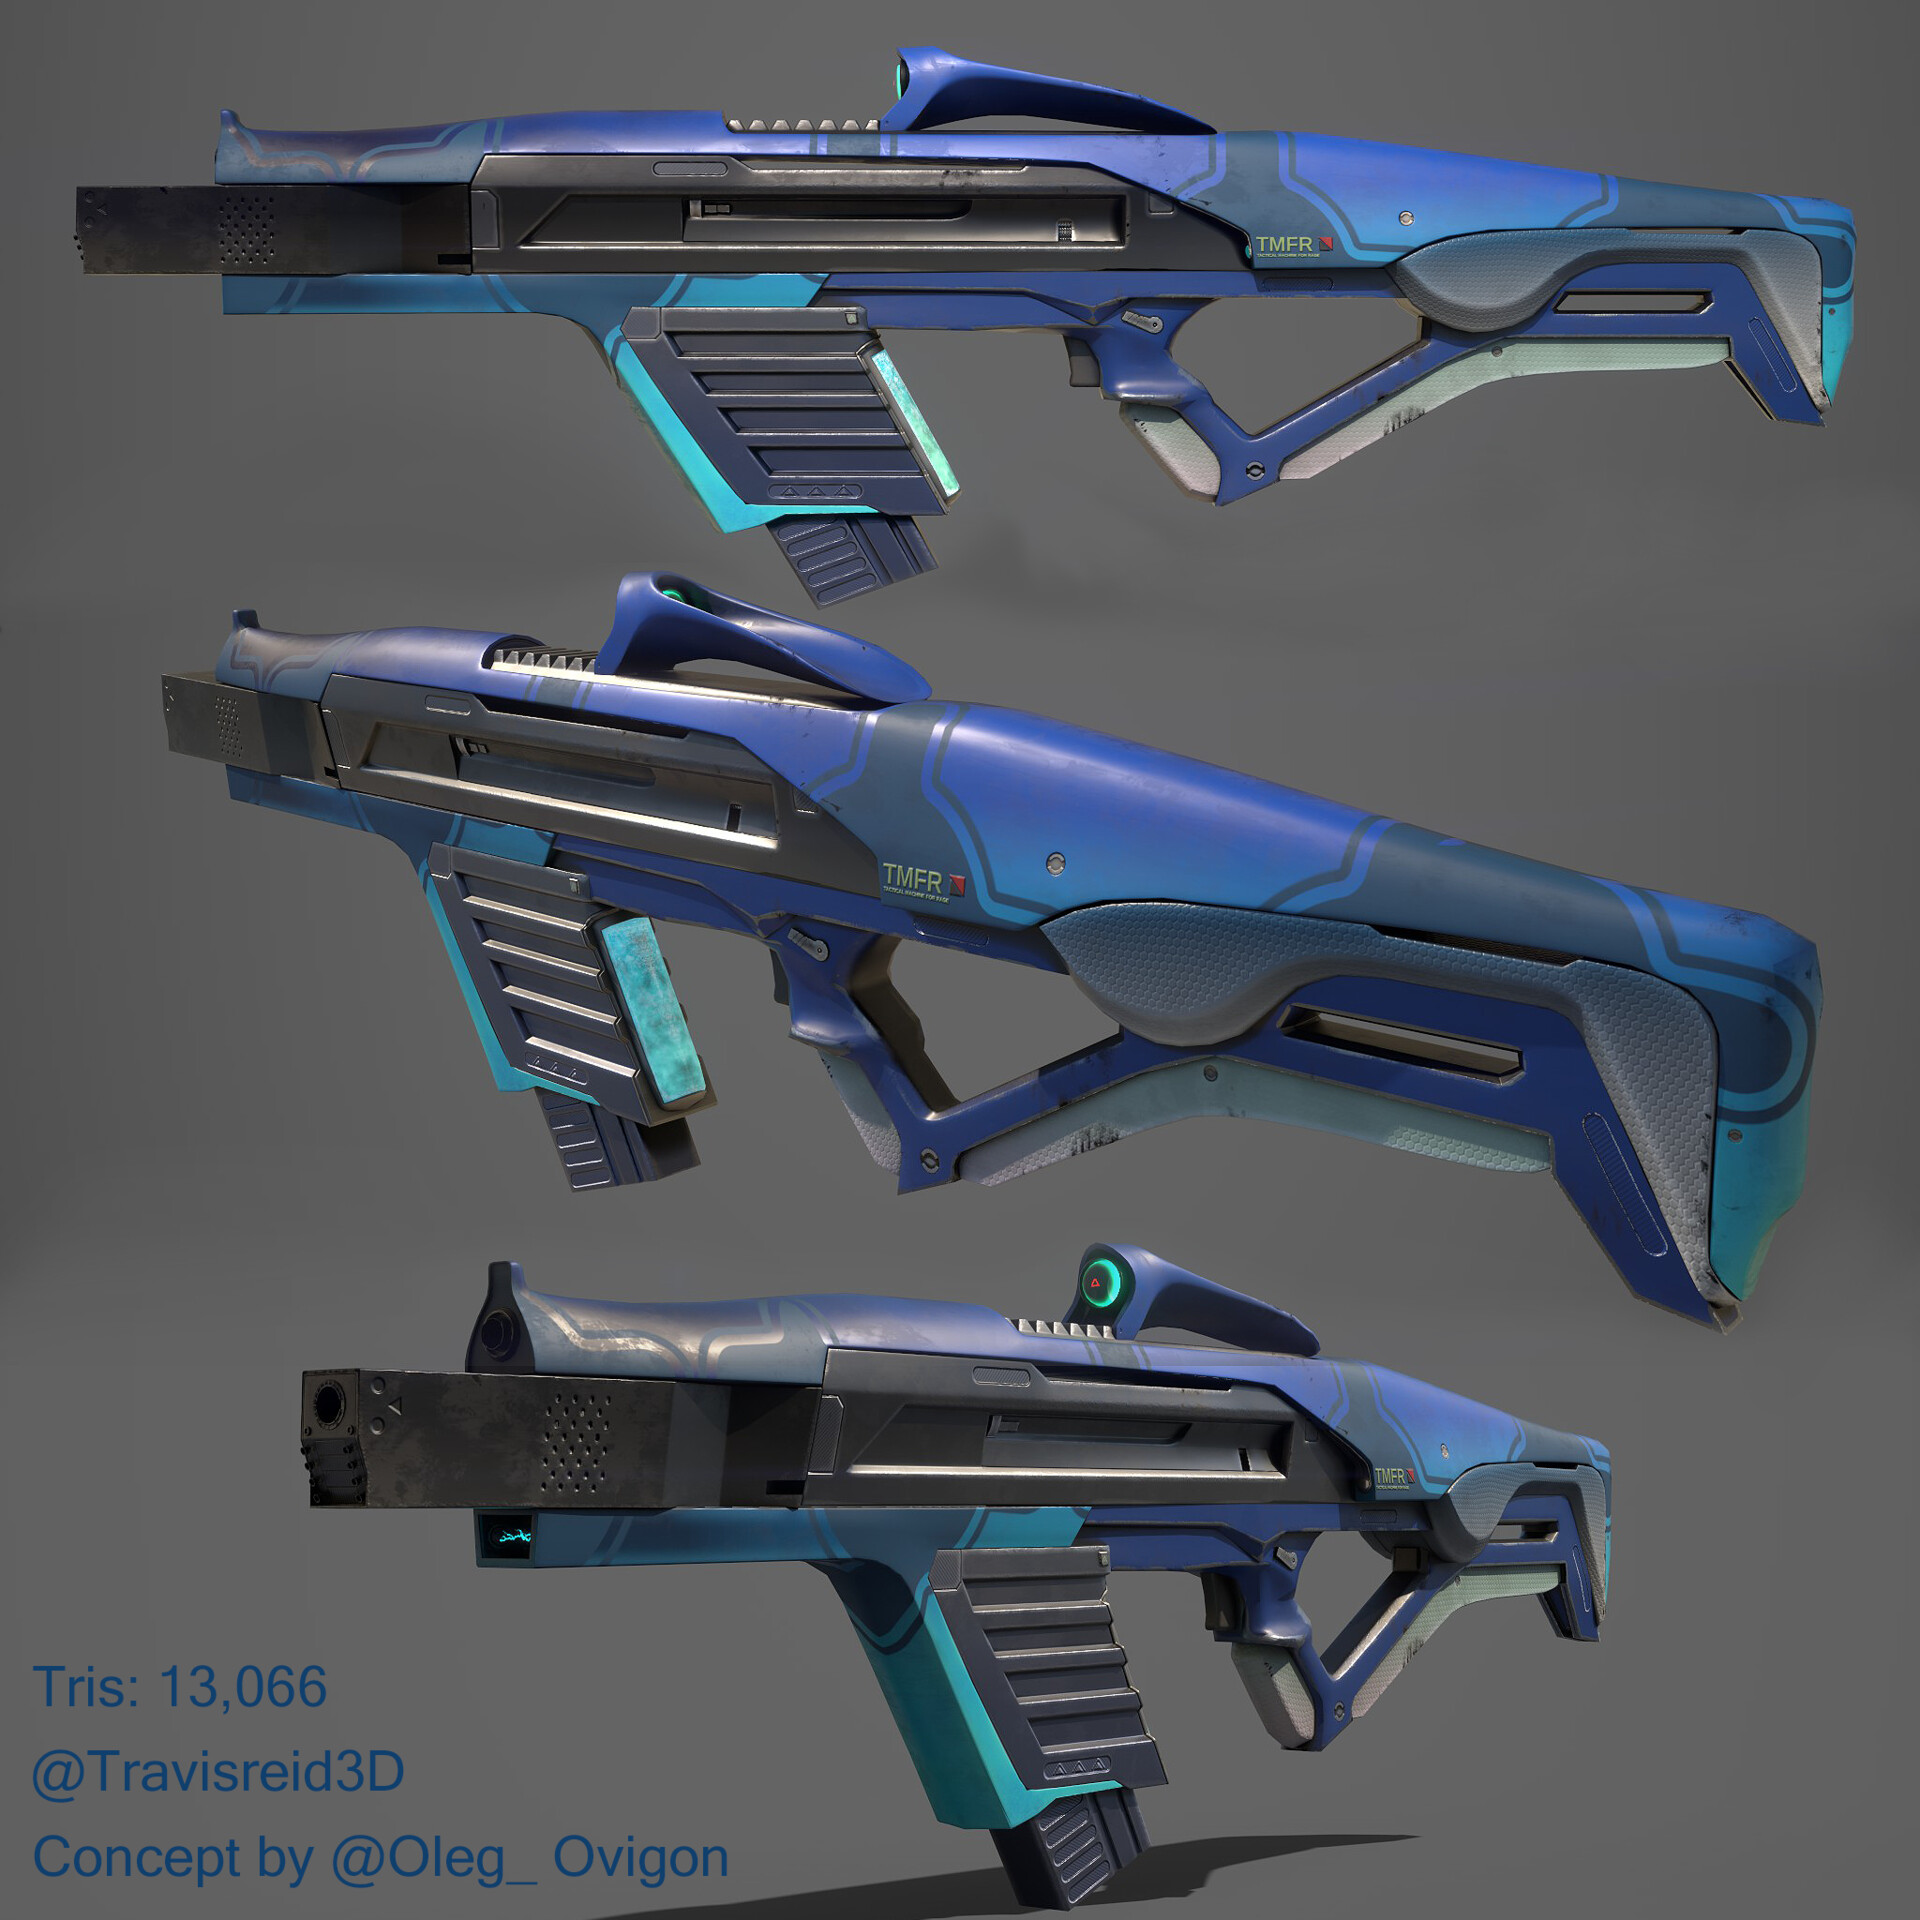 futuristic rifle with a semi-sleek design and a blue color